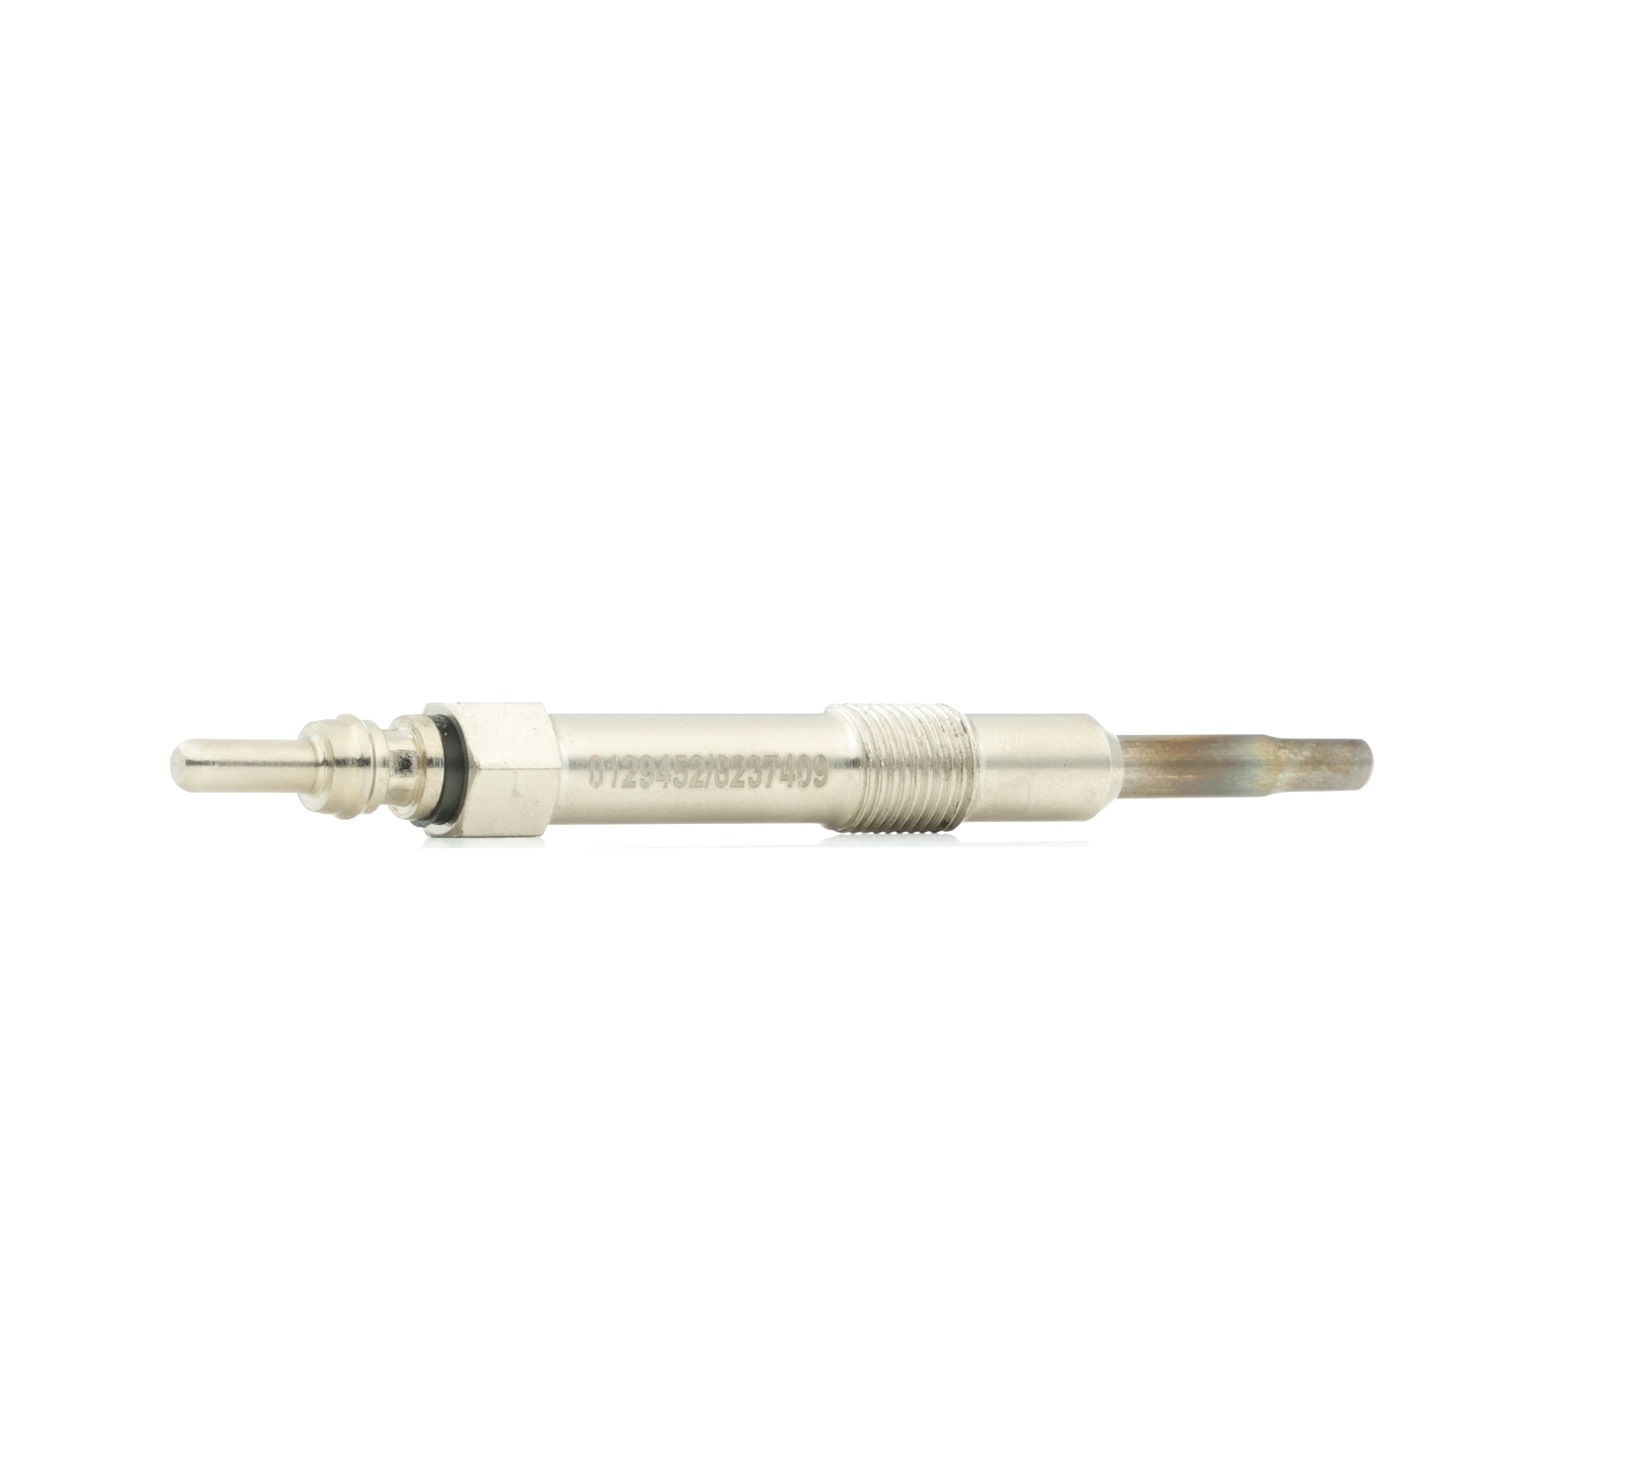 STARK SKGP-1890019 Glow plug 11V, after-glow capable, Length: 103, 24 mm